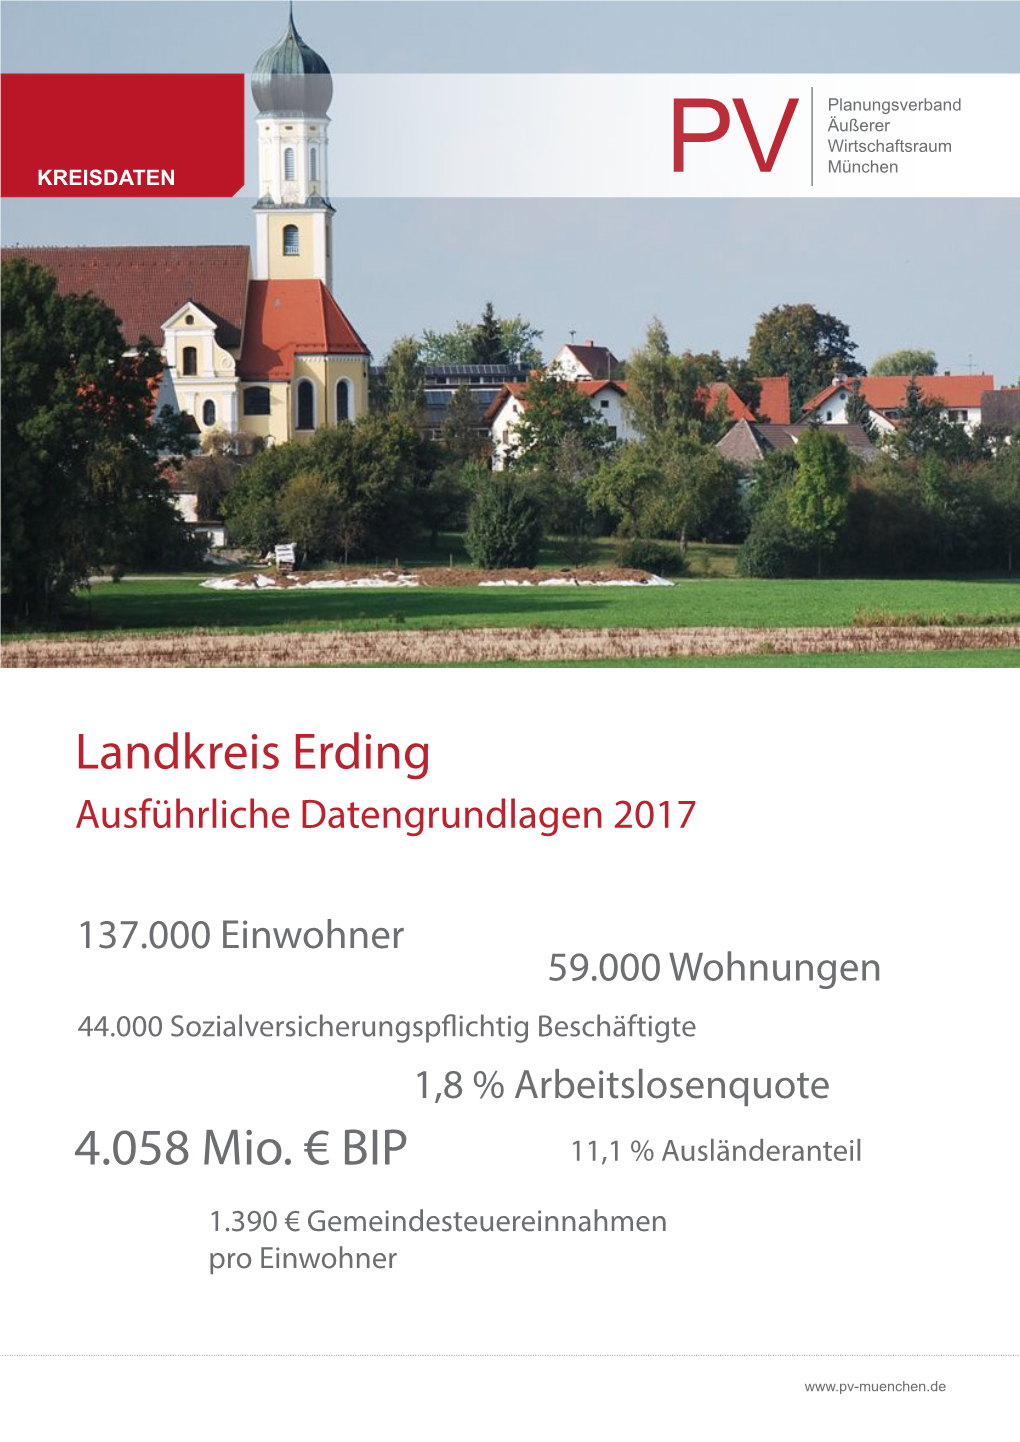 Landkreis Erding 4.058 Mio. €